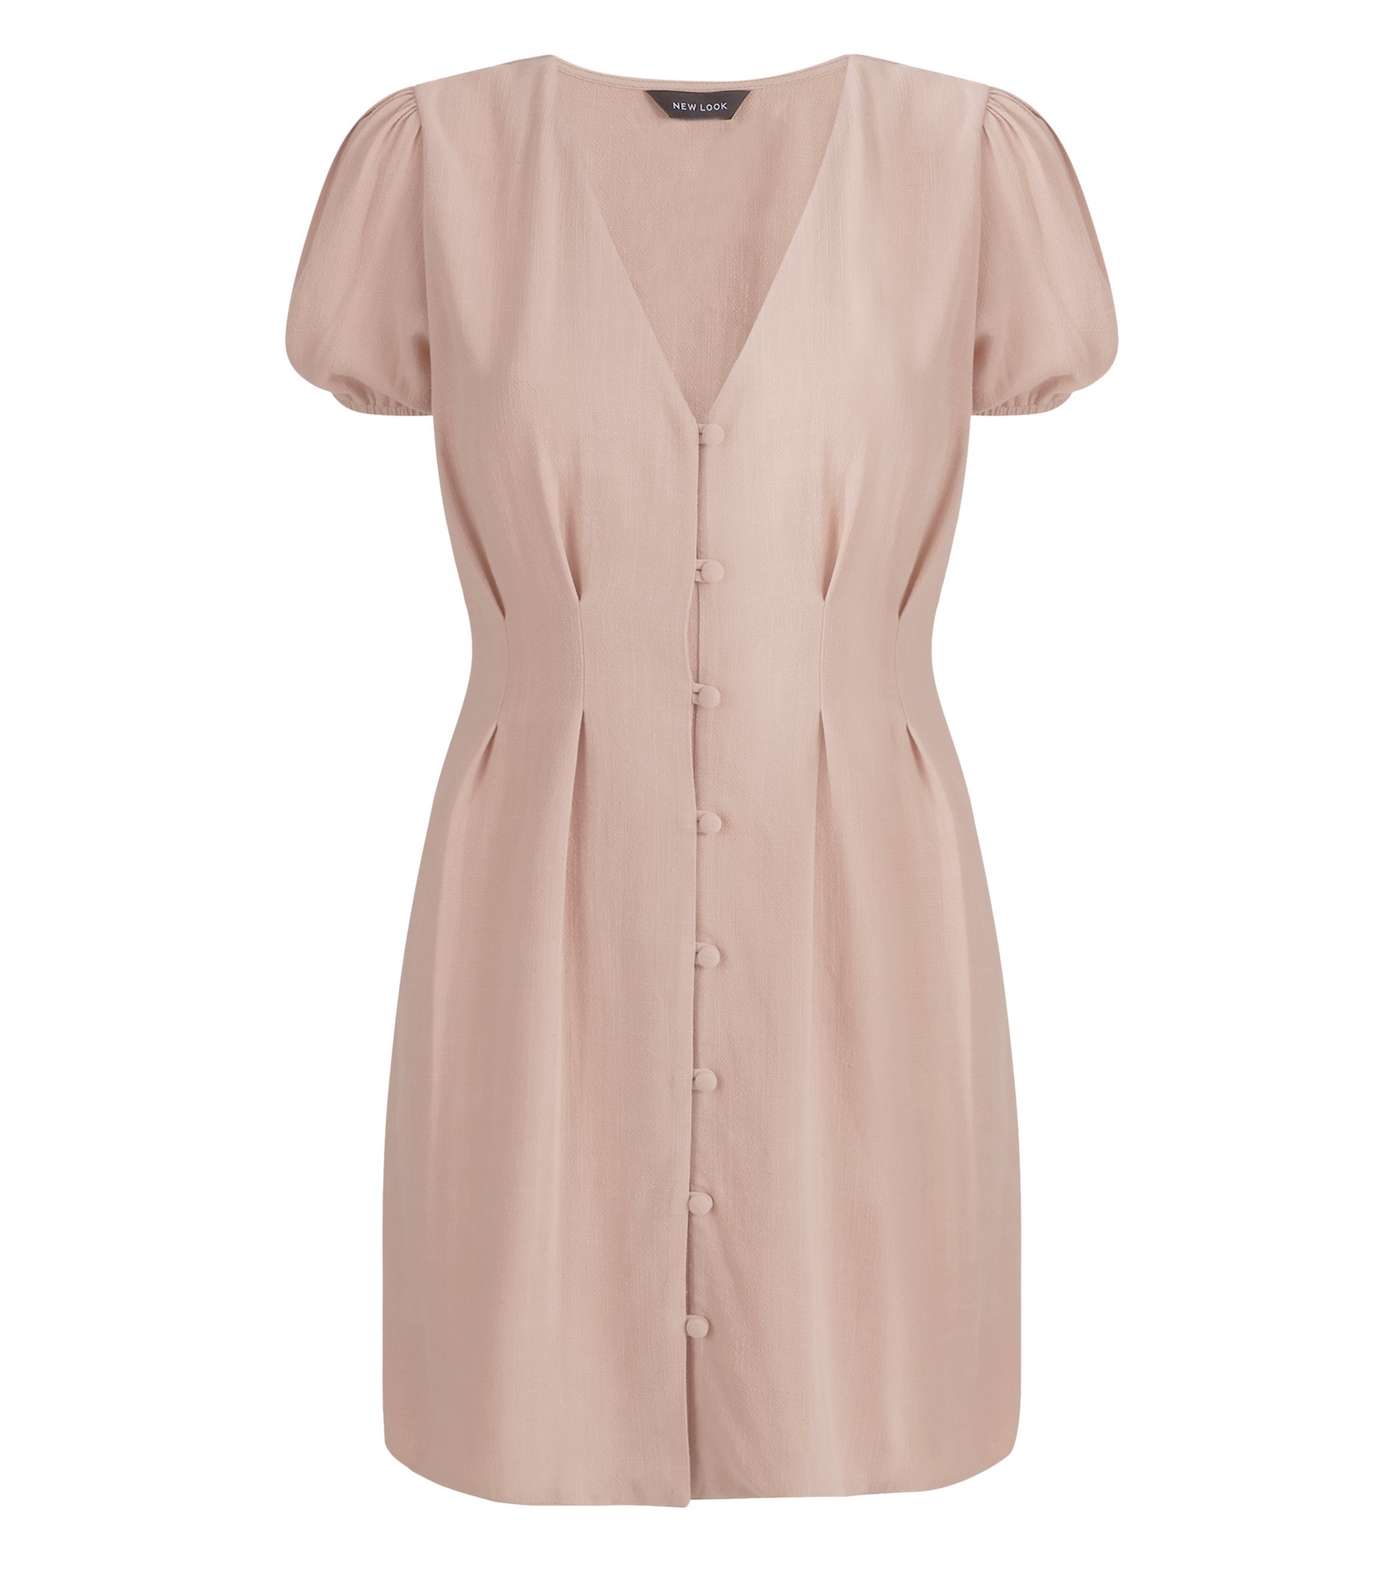 Pale Pink Linen Look Button Up Tea Dress